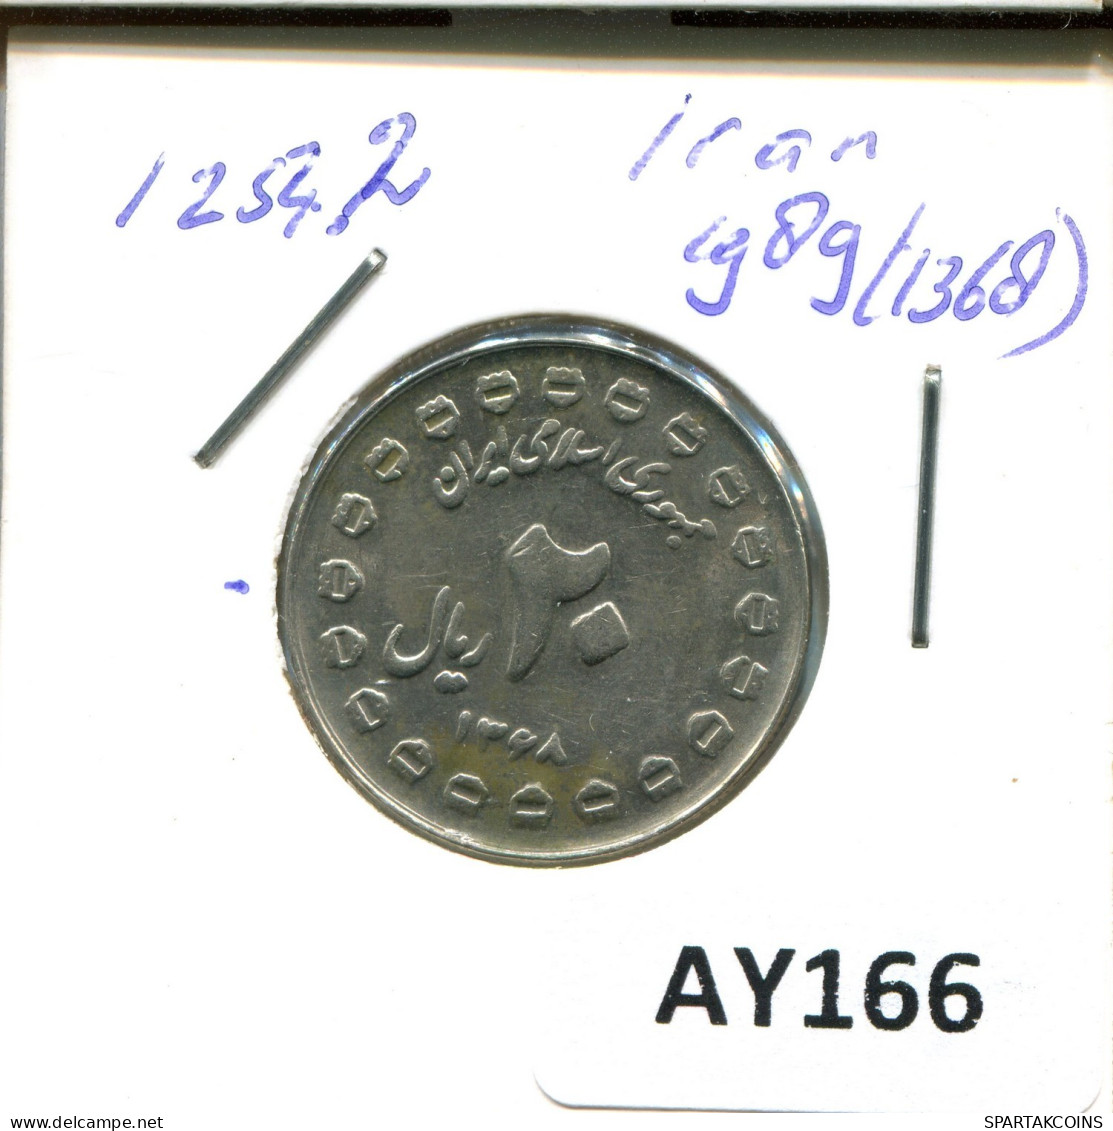 IRAN 20 RIALS 1989 / 1368 ISLAMIC COIN #AY166.2.U.A - Iran